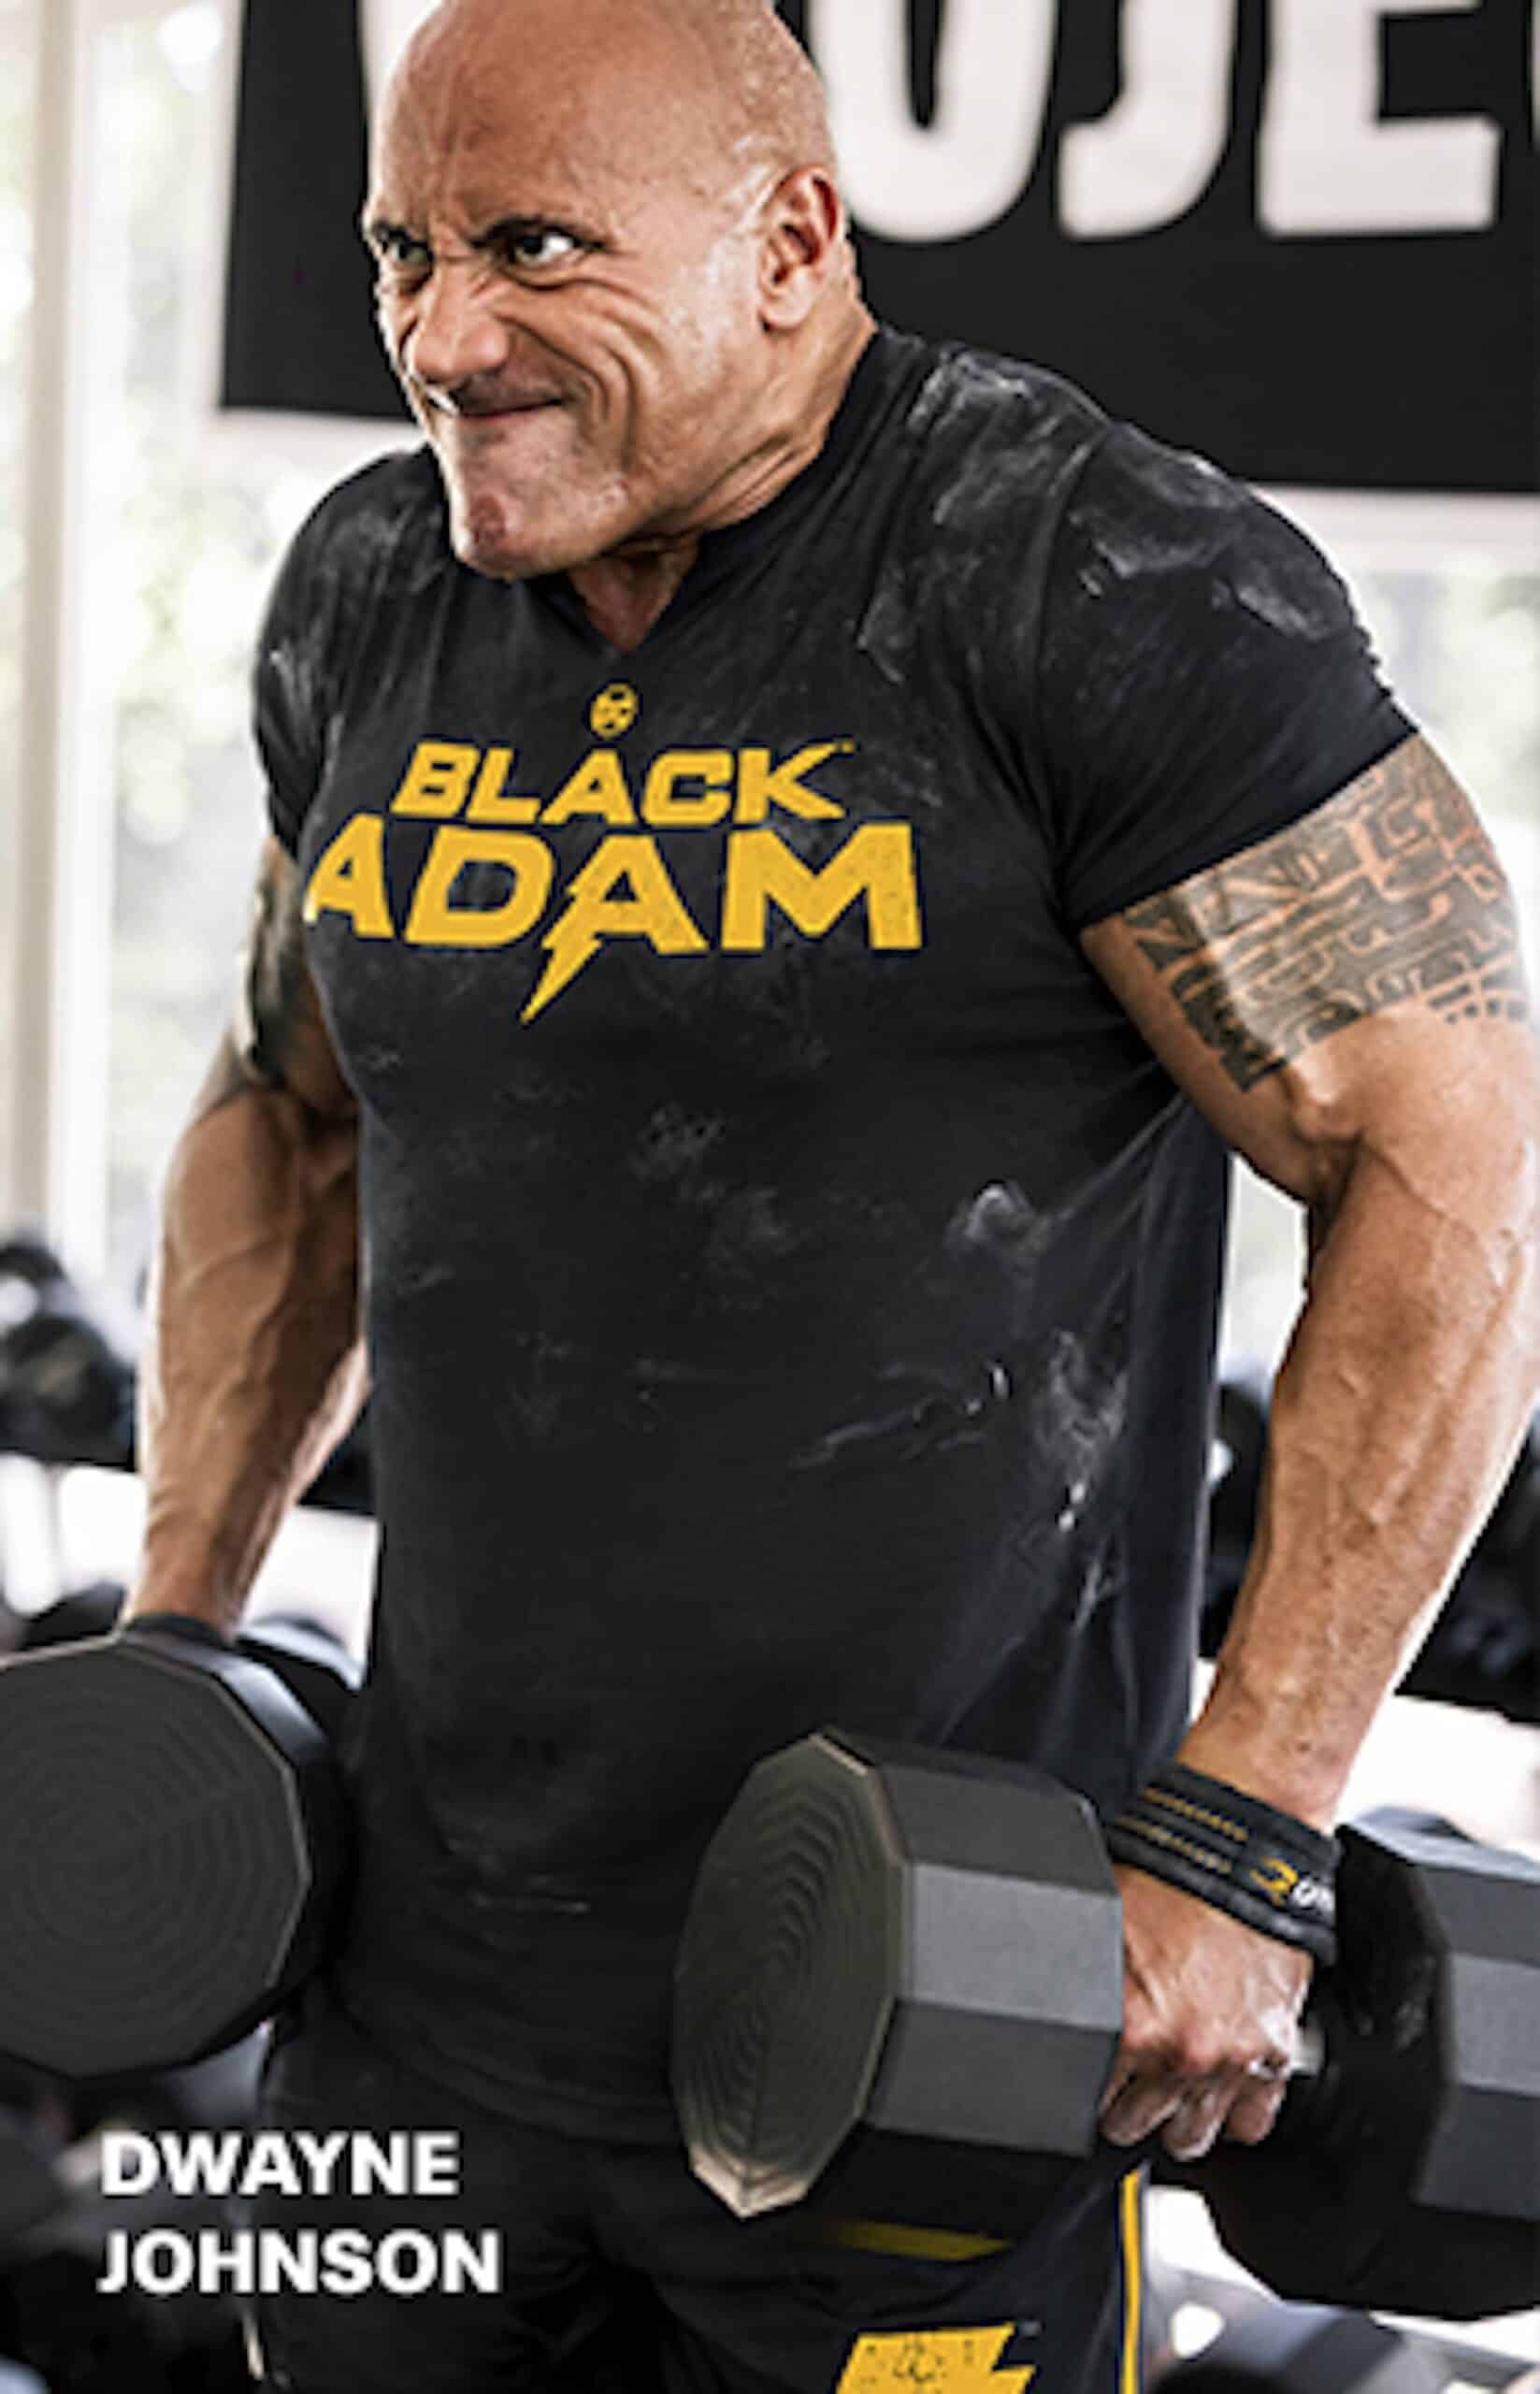 The rock wearing black adam t